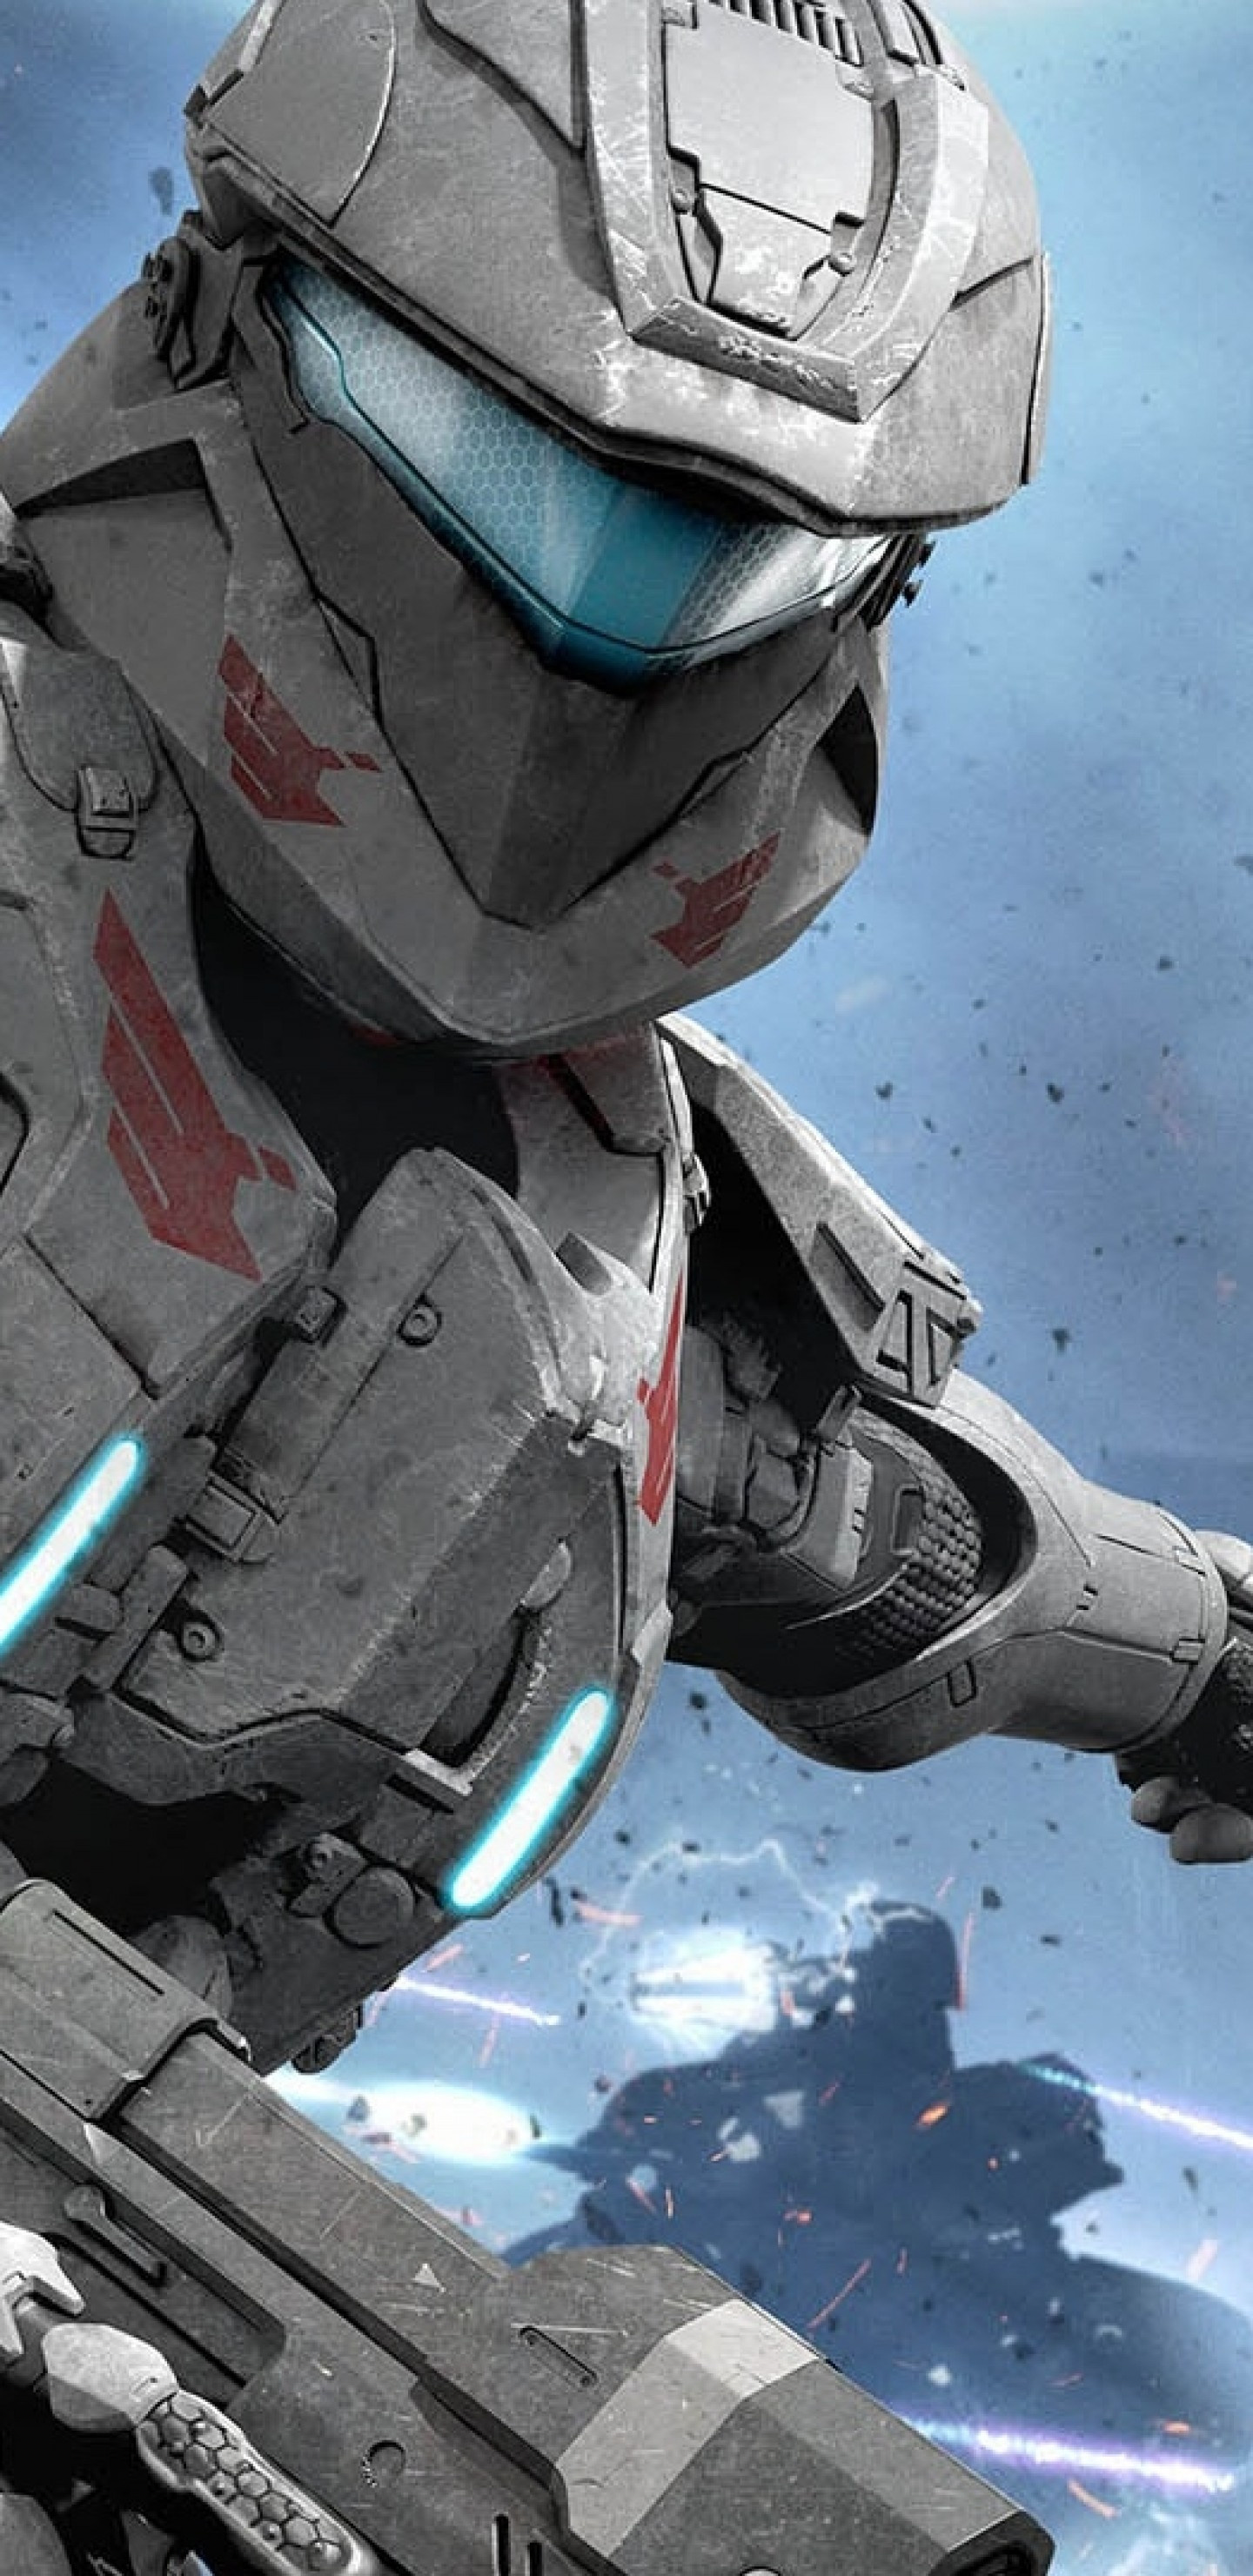 Halo: Spartan Assault, Suit and gun, War wallpapers, Samsung Galaxy, 1440x2960 HD Handy